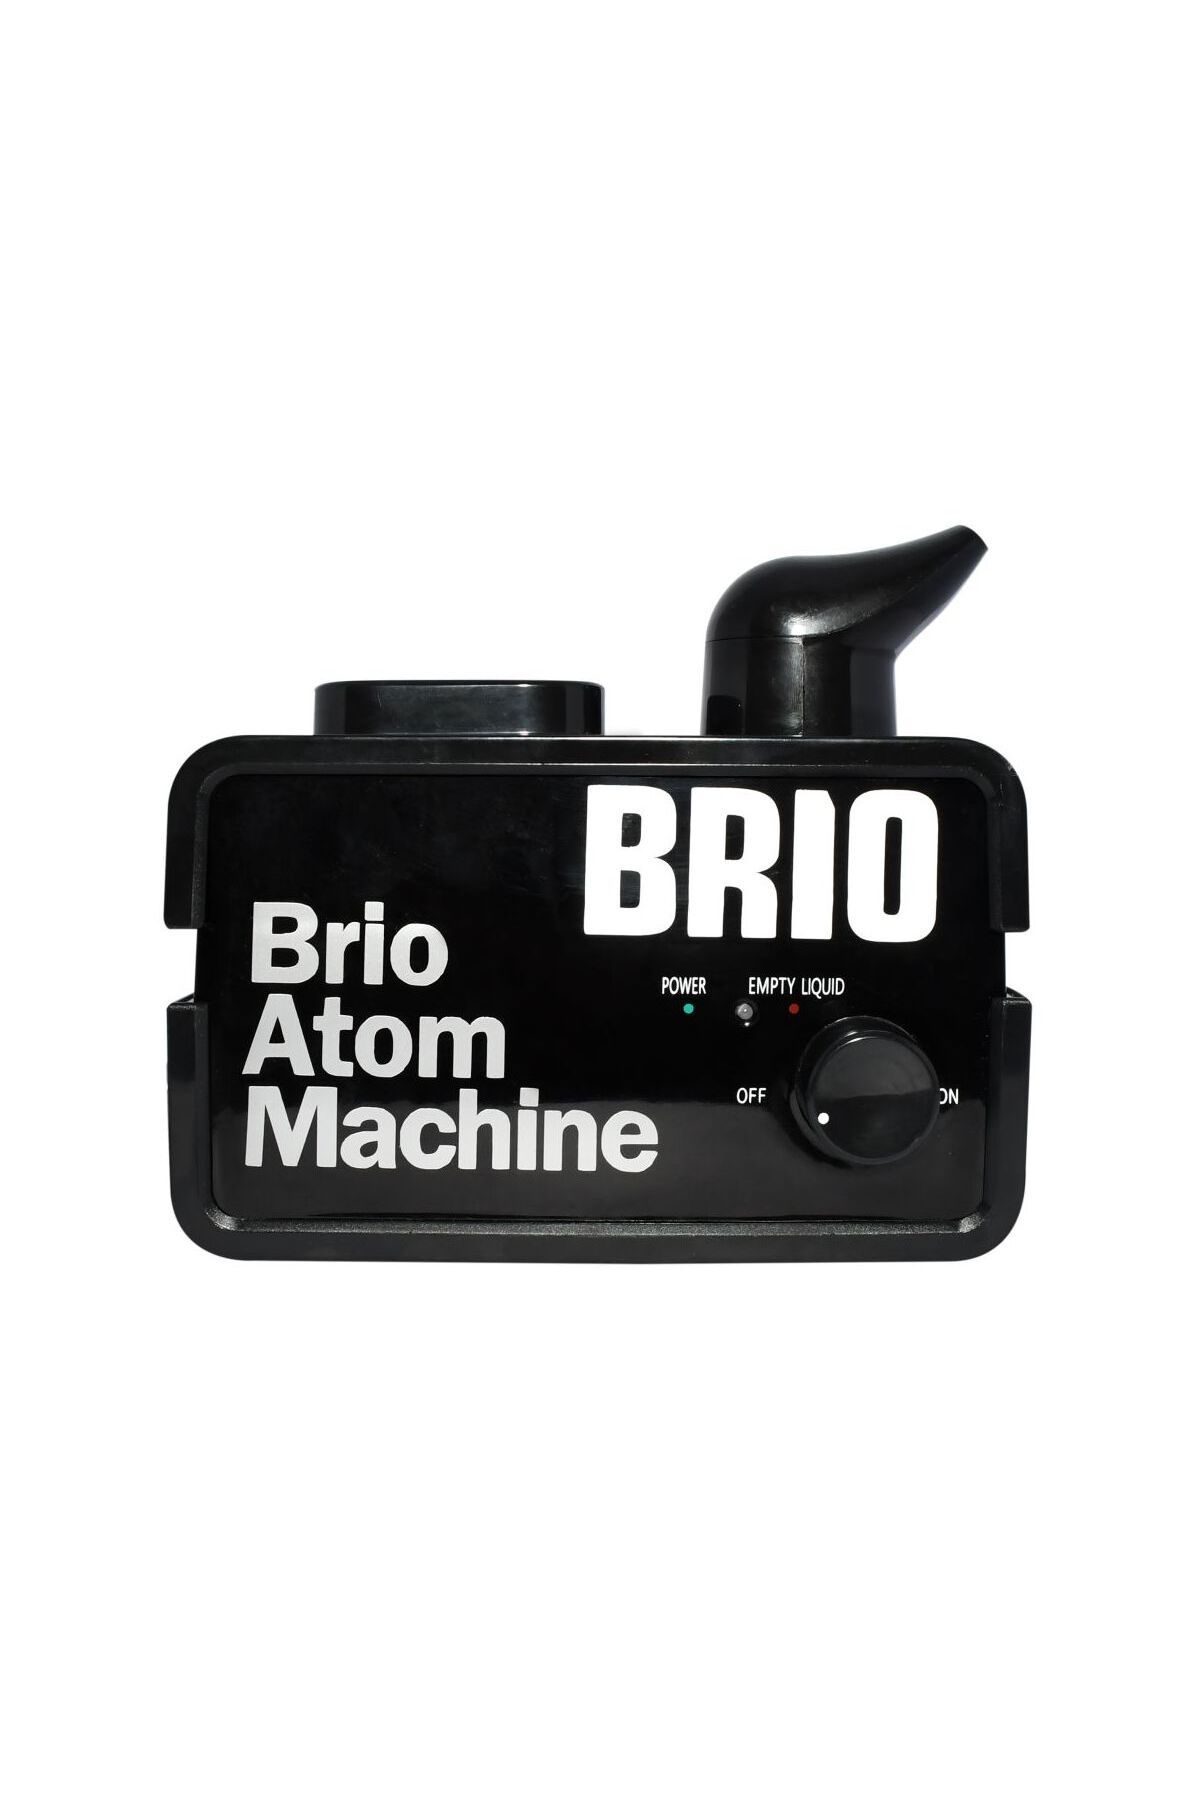 Brio Klima Araç Içi Atom Tazeleme Makinası (48 KULLANIMLIK) Tek Makina Ilaçsız